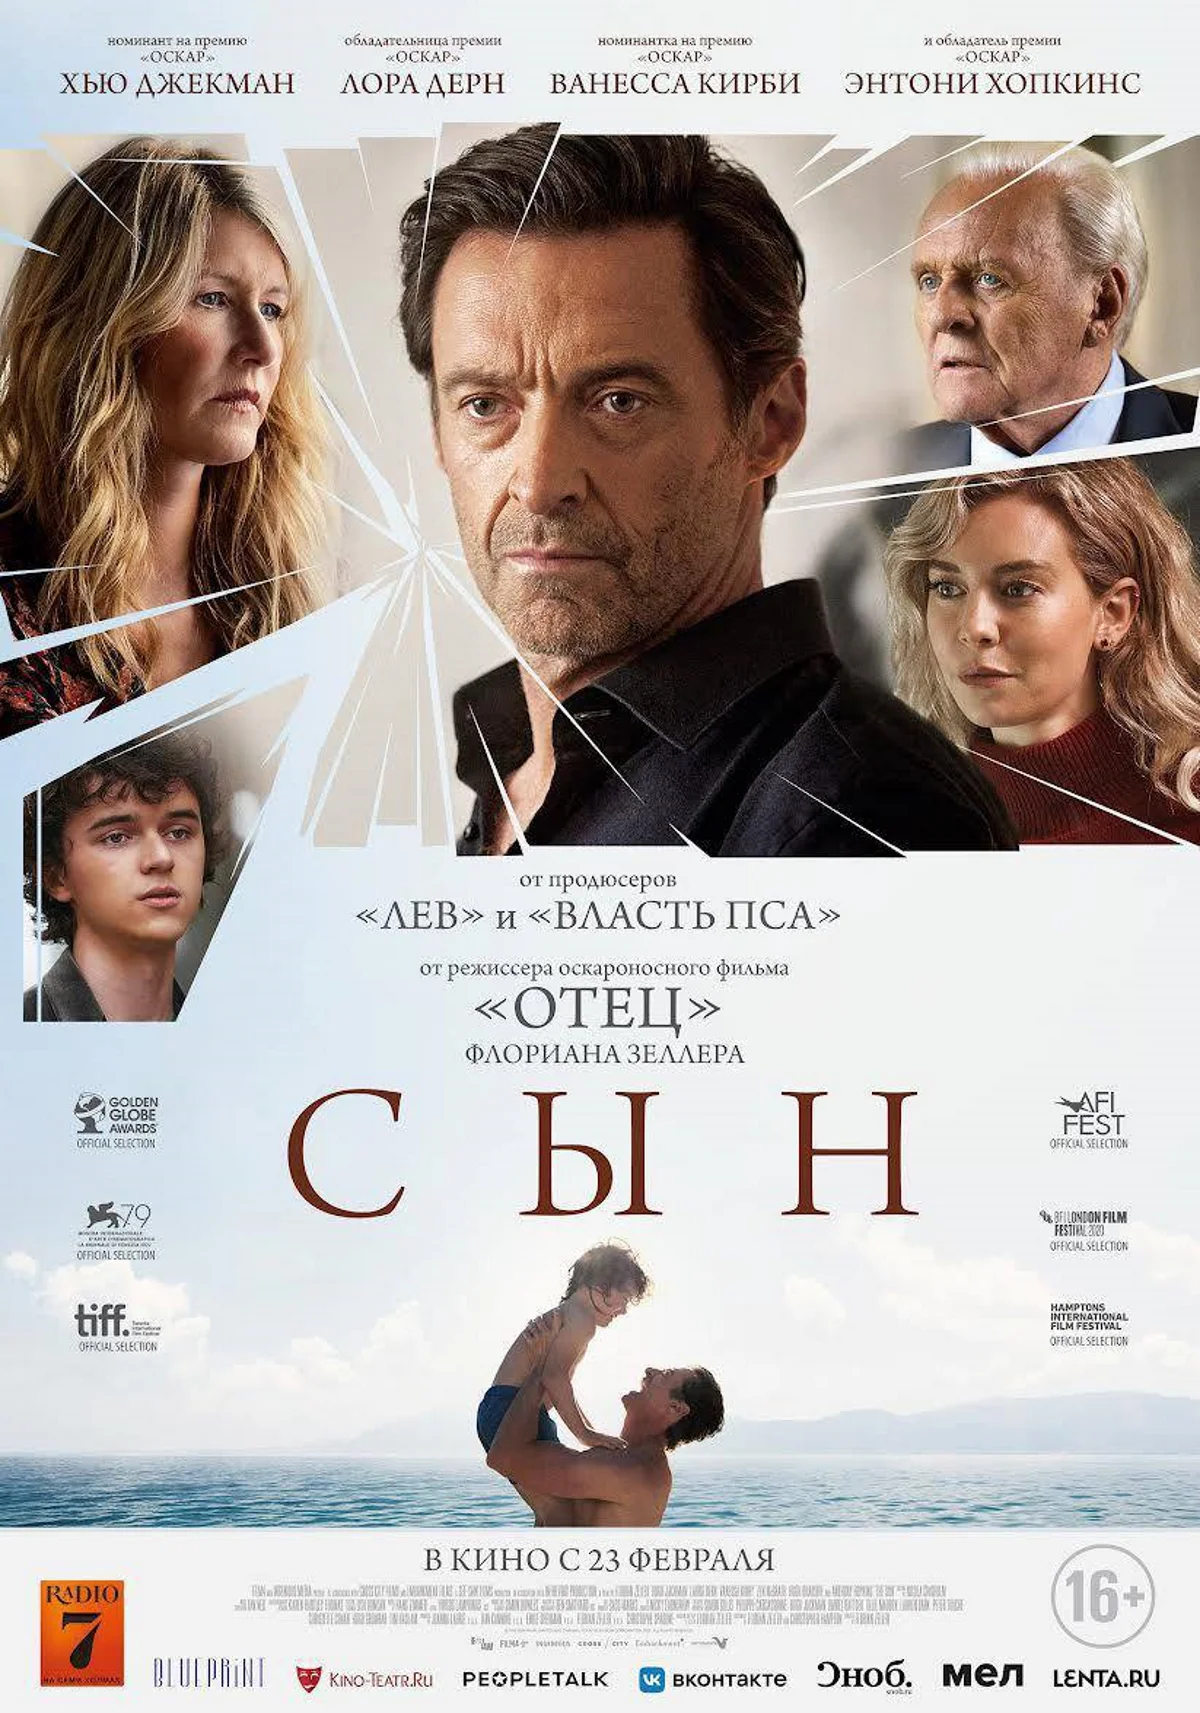 Вышел новый русскоязычный постер драмы «Сын» с Хью Джекманом и Энтони Хопкинсом - фото 1